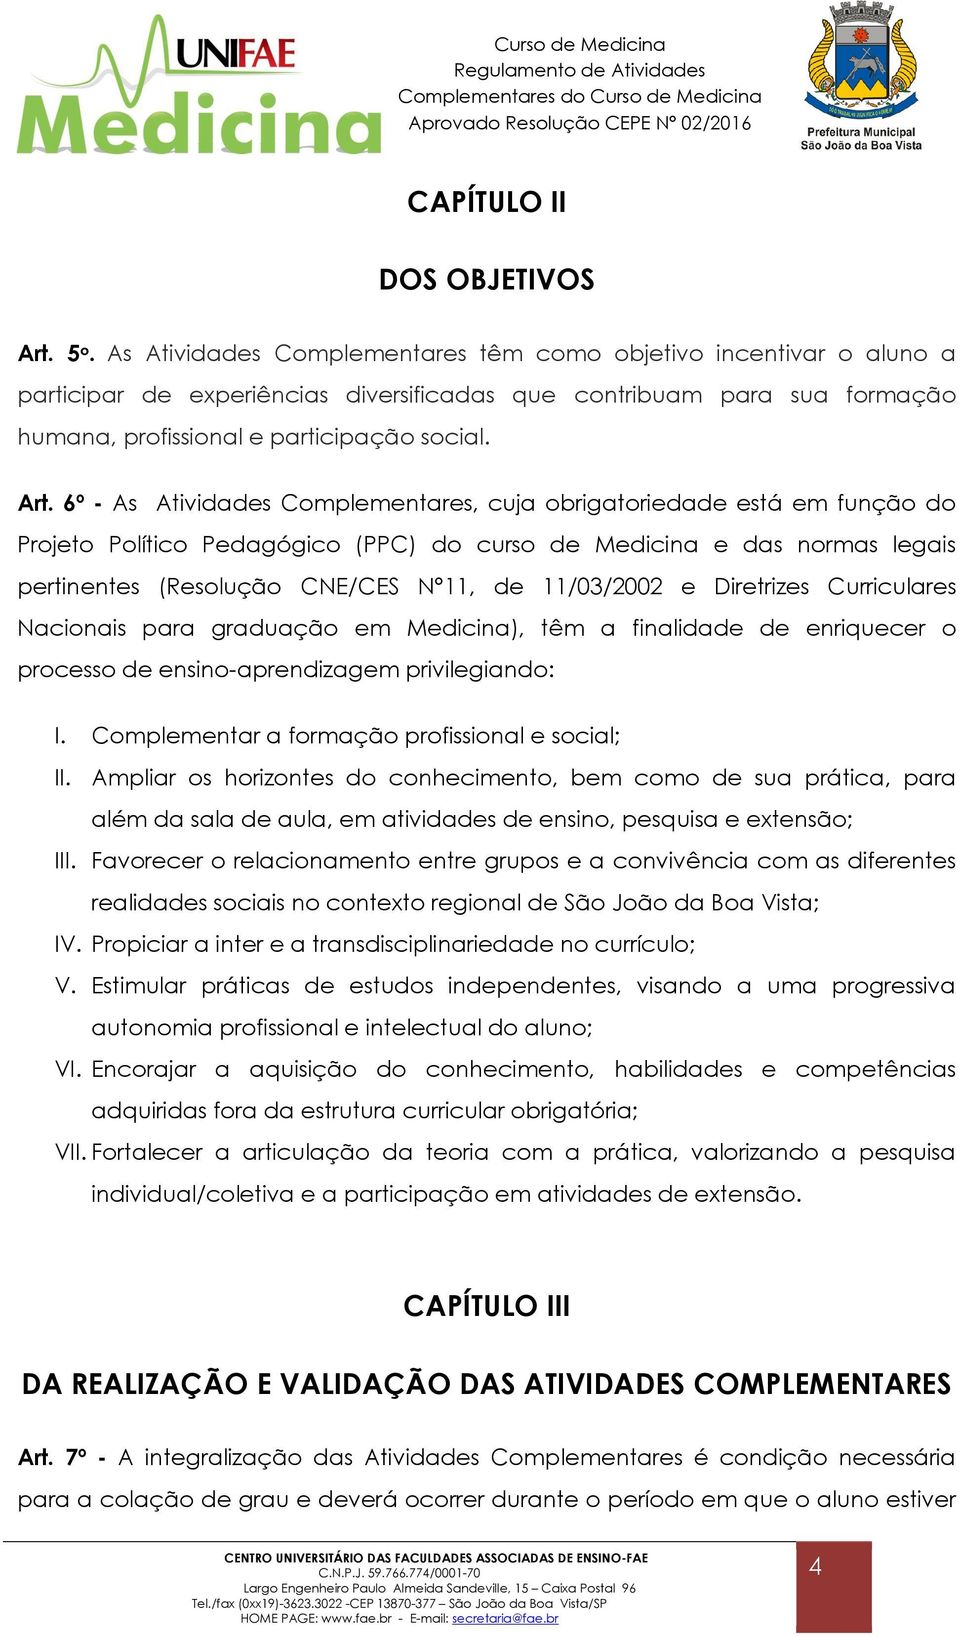 6º - As Atividades Complementares, cuja obrigatoriedade está em função do Projeto Político Pedagógico (PPC) do curso de Medicina e das normas legais pertinentes (Resolução CNE/CES N 11, de 11/03/2002